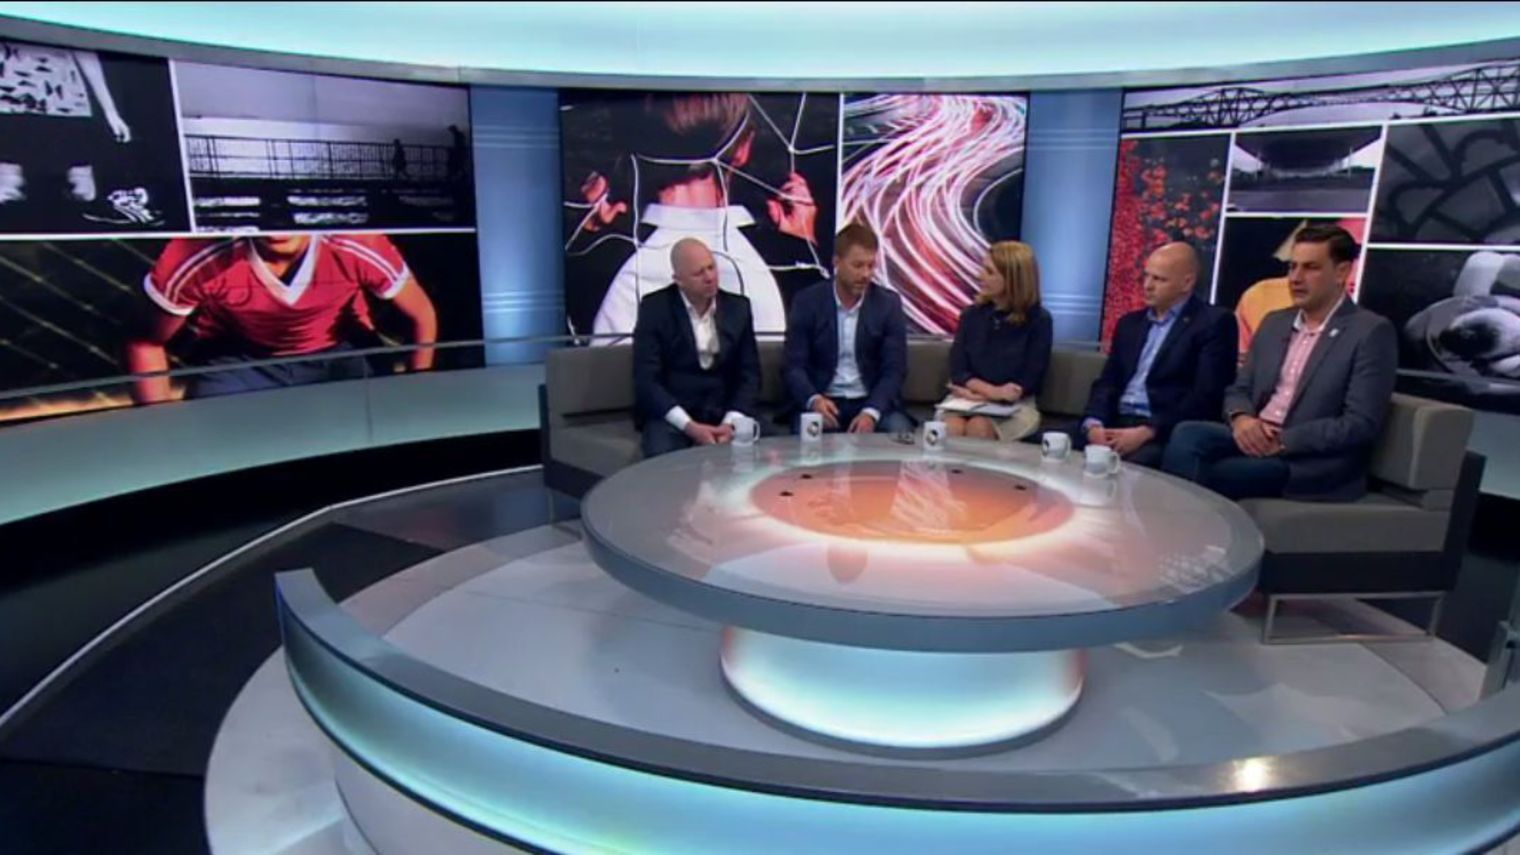   Quatre anciens footballeurs ont témoigné sur la BBC des abus sexuels subis dans leur enfance par leur entraîneur.  © BBC 